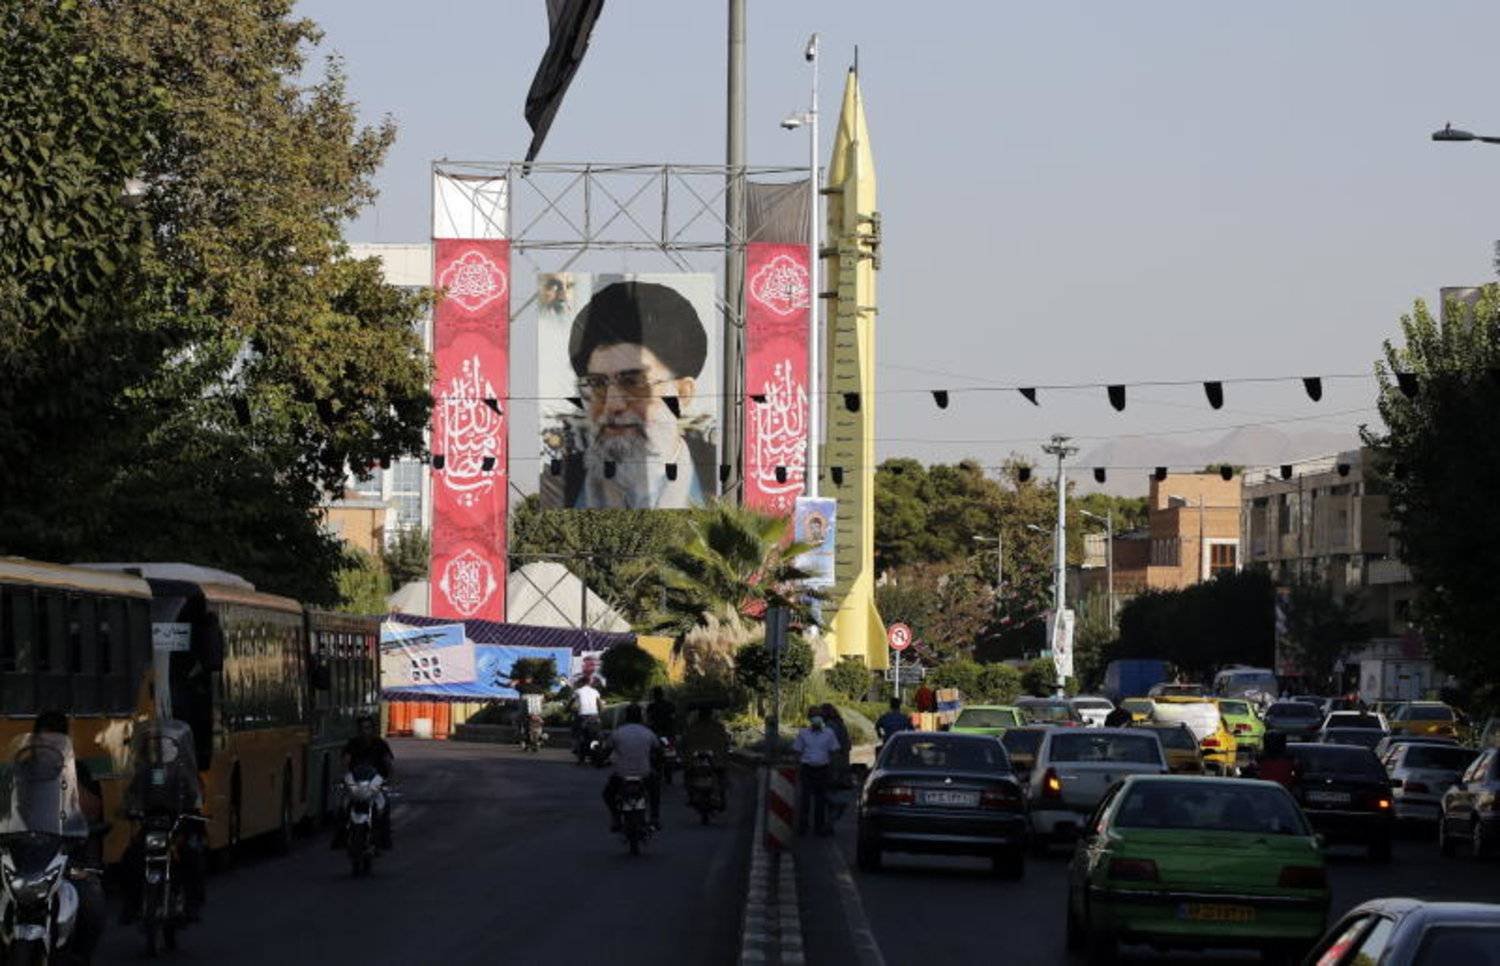 إيرانيون يمرون بجانب صاروخ «أرض - أرض» من طراز «شهاب 3» معروض بجوار صورة المرشد علي خامنئي في معرض بأحد شوارع طهران (إ.ب.أ)